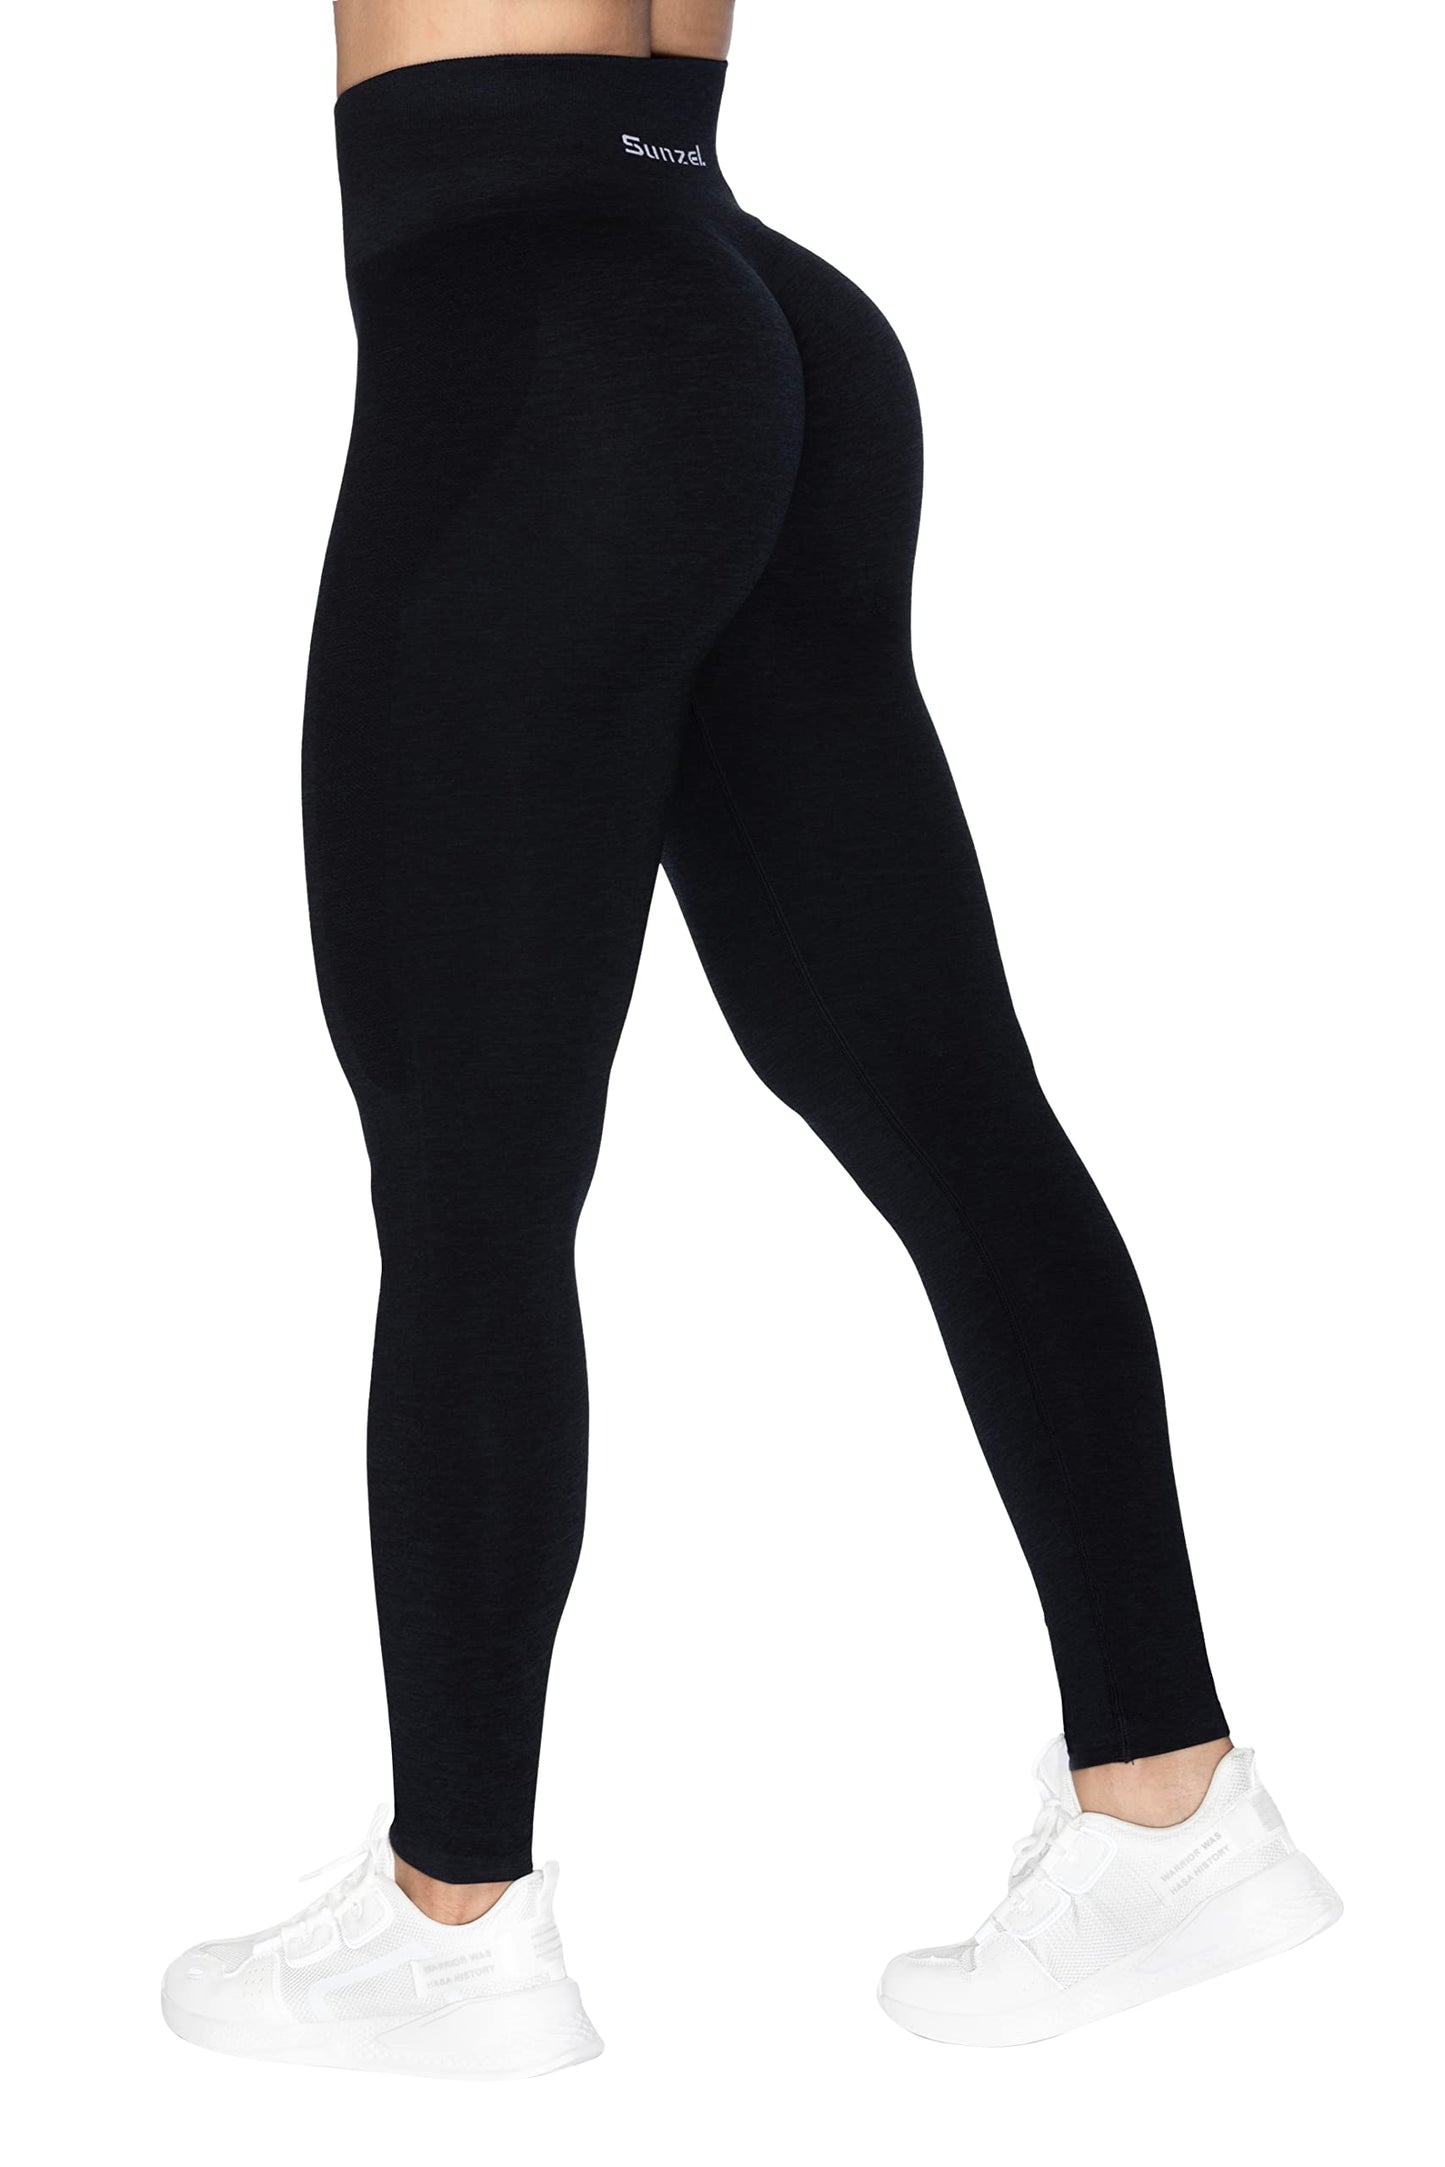 Sunzel Leggings de levantamiento de glúteos para mujer de talle alto, sin costuras, mallas de gimnasio, pantalones de yoga con control de barriga, color negro